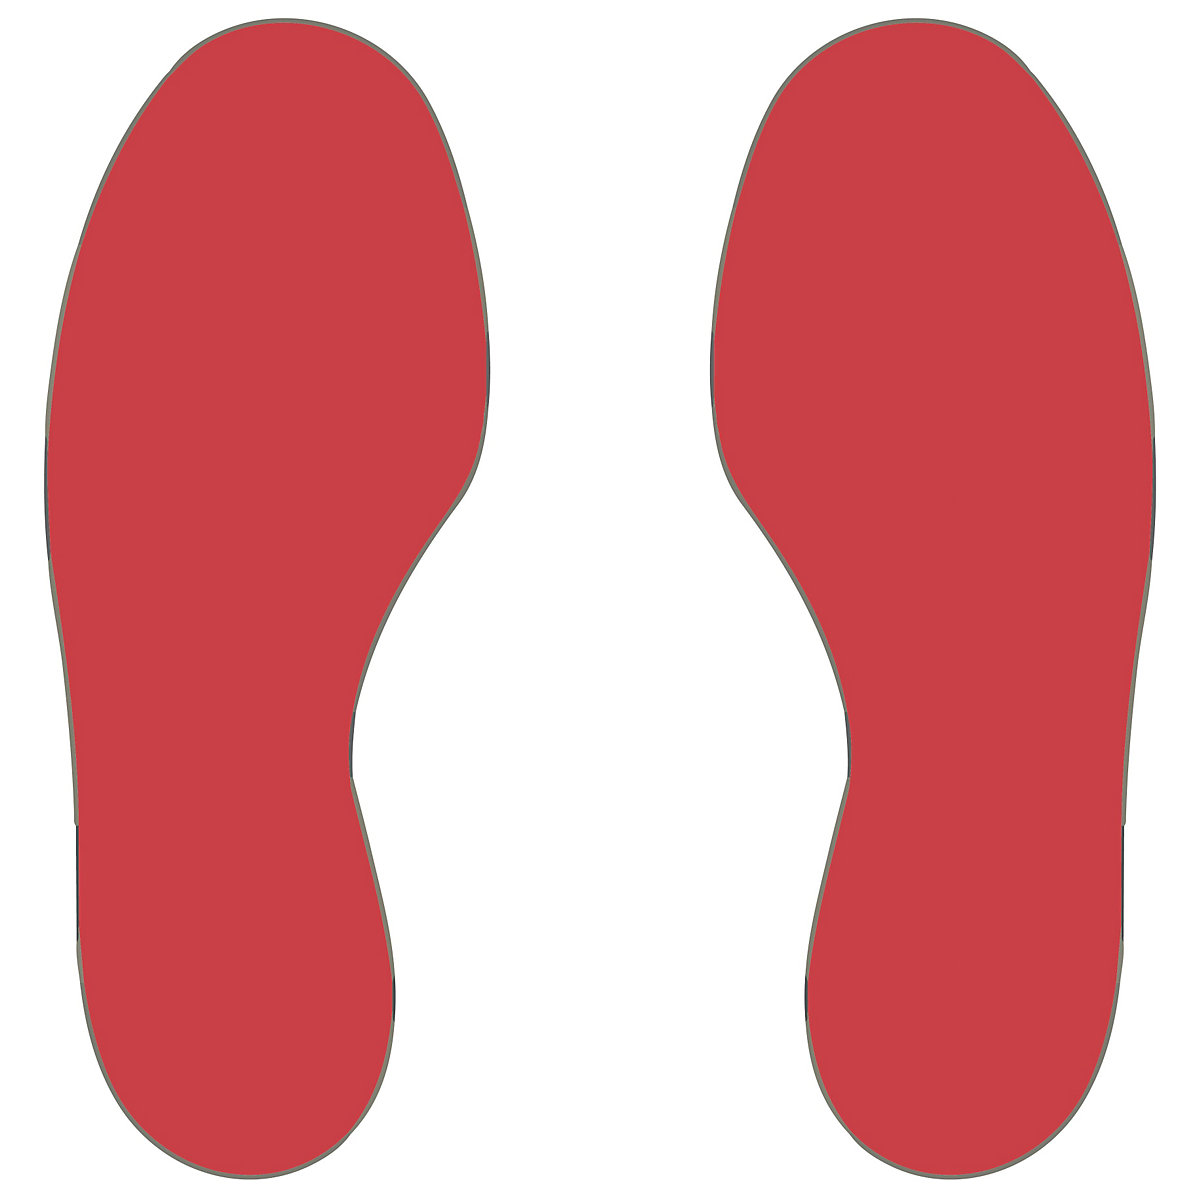 Marquages des sols en PVC, pieds, 5 droits / 5 gauches, lot de 10, rouge